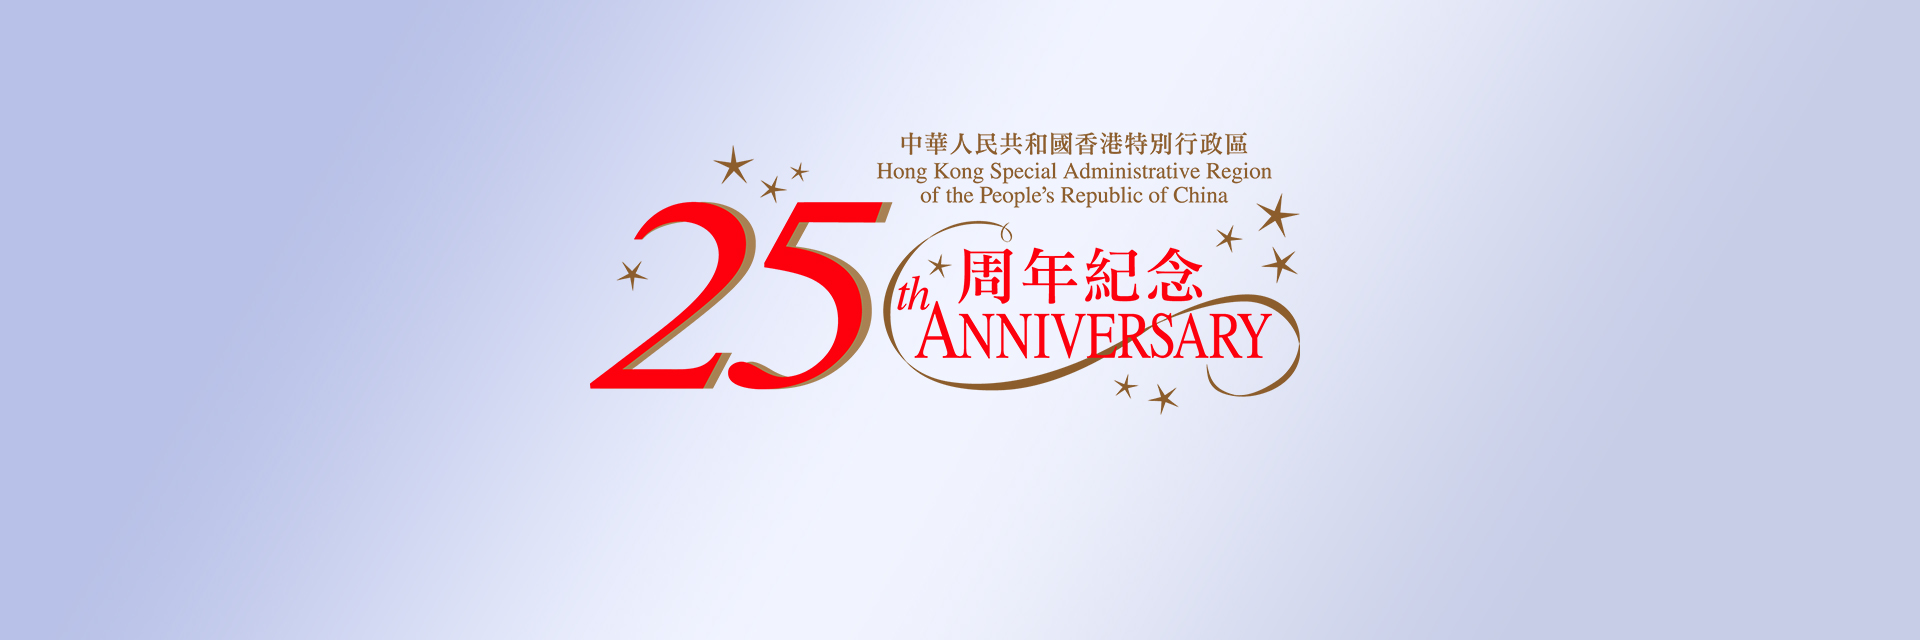 庆祝香港特别行政区成立25周年